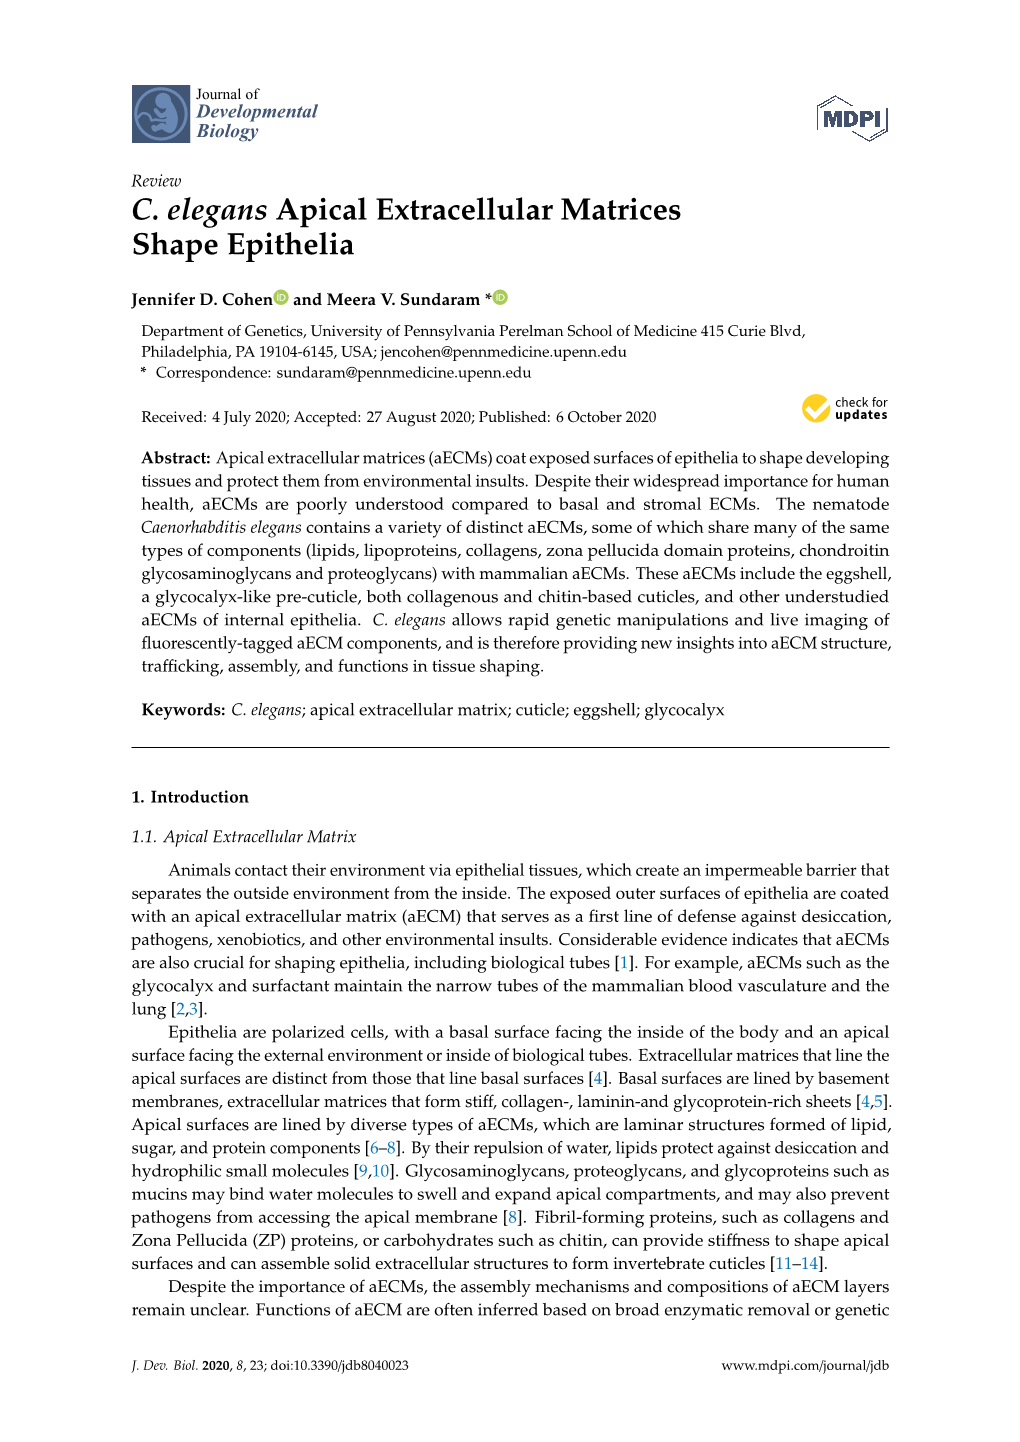 C. Elegans Apical Extracellular Matrices Shape Epithelia